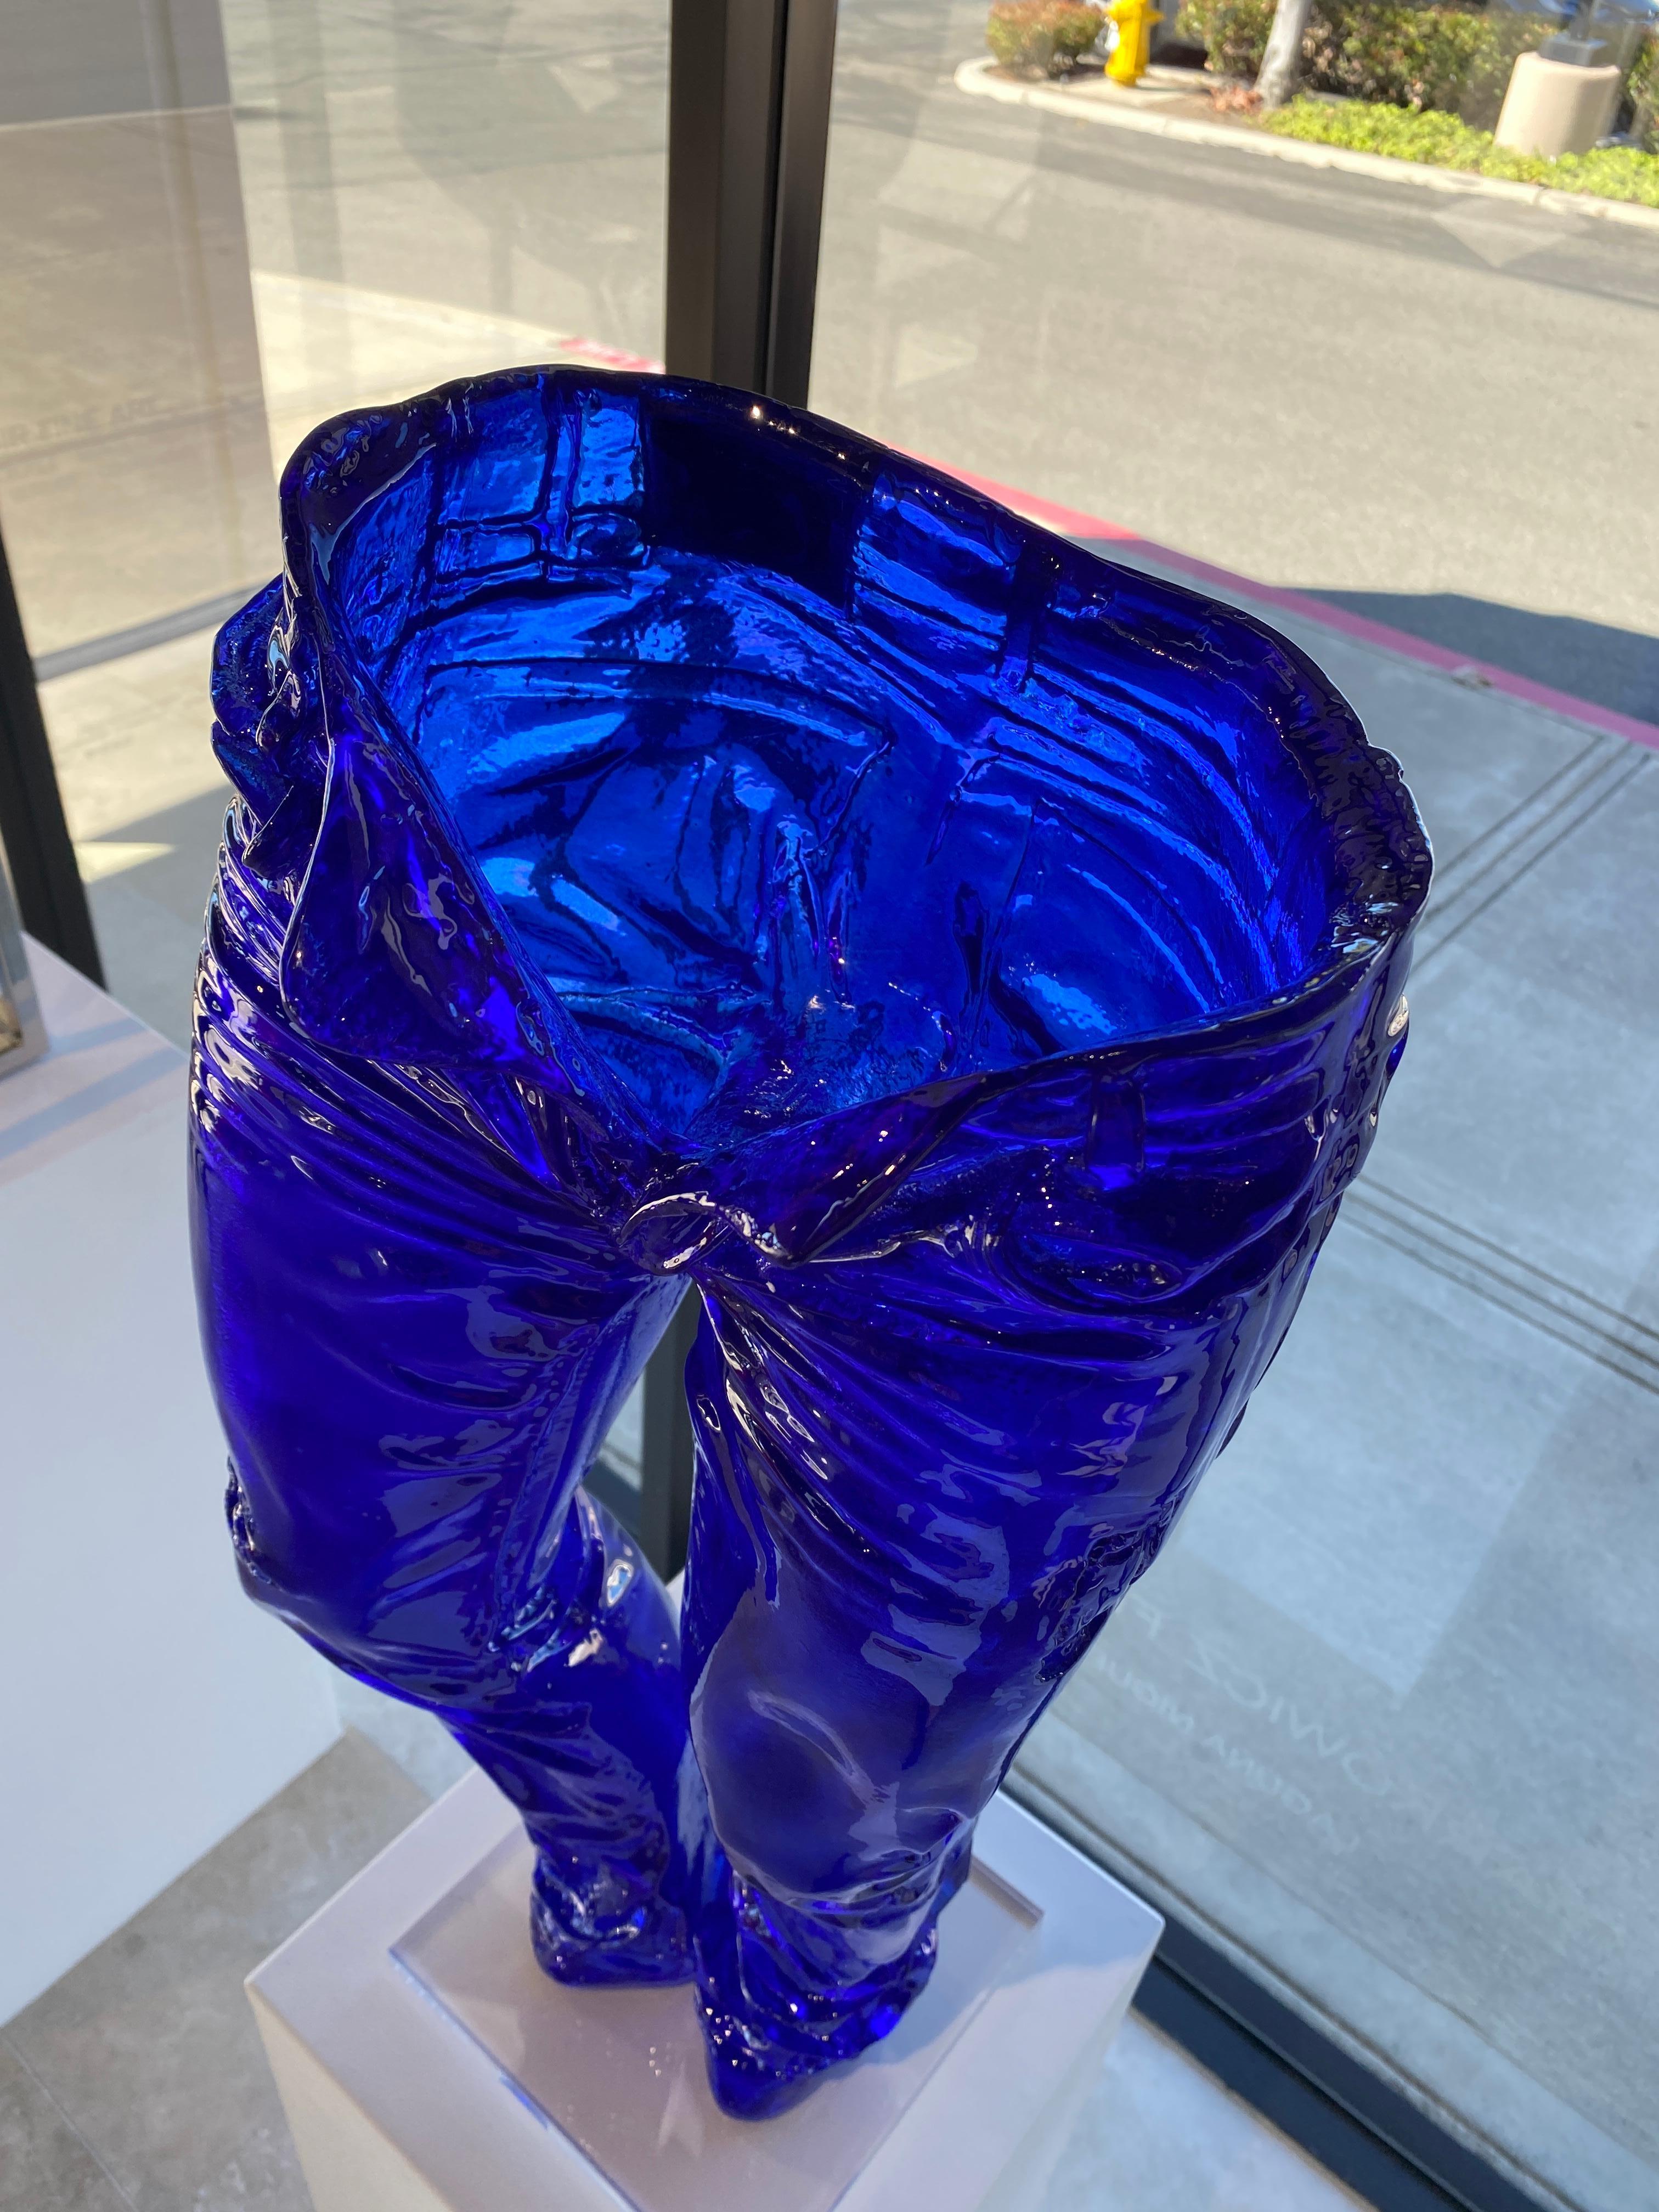 70 cm Crystal Blue Jeans - Pop Art Sculpture by Richard Orlinski